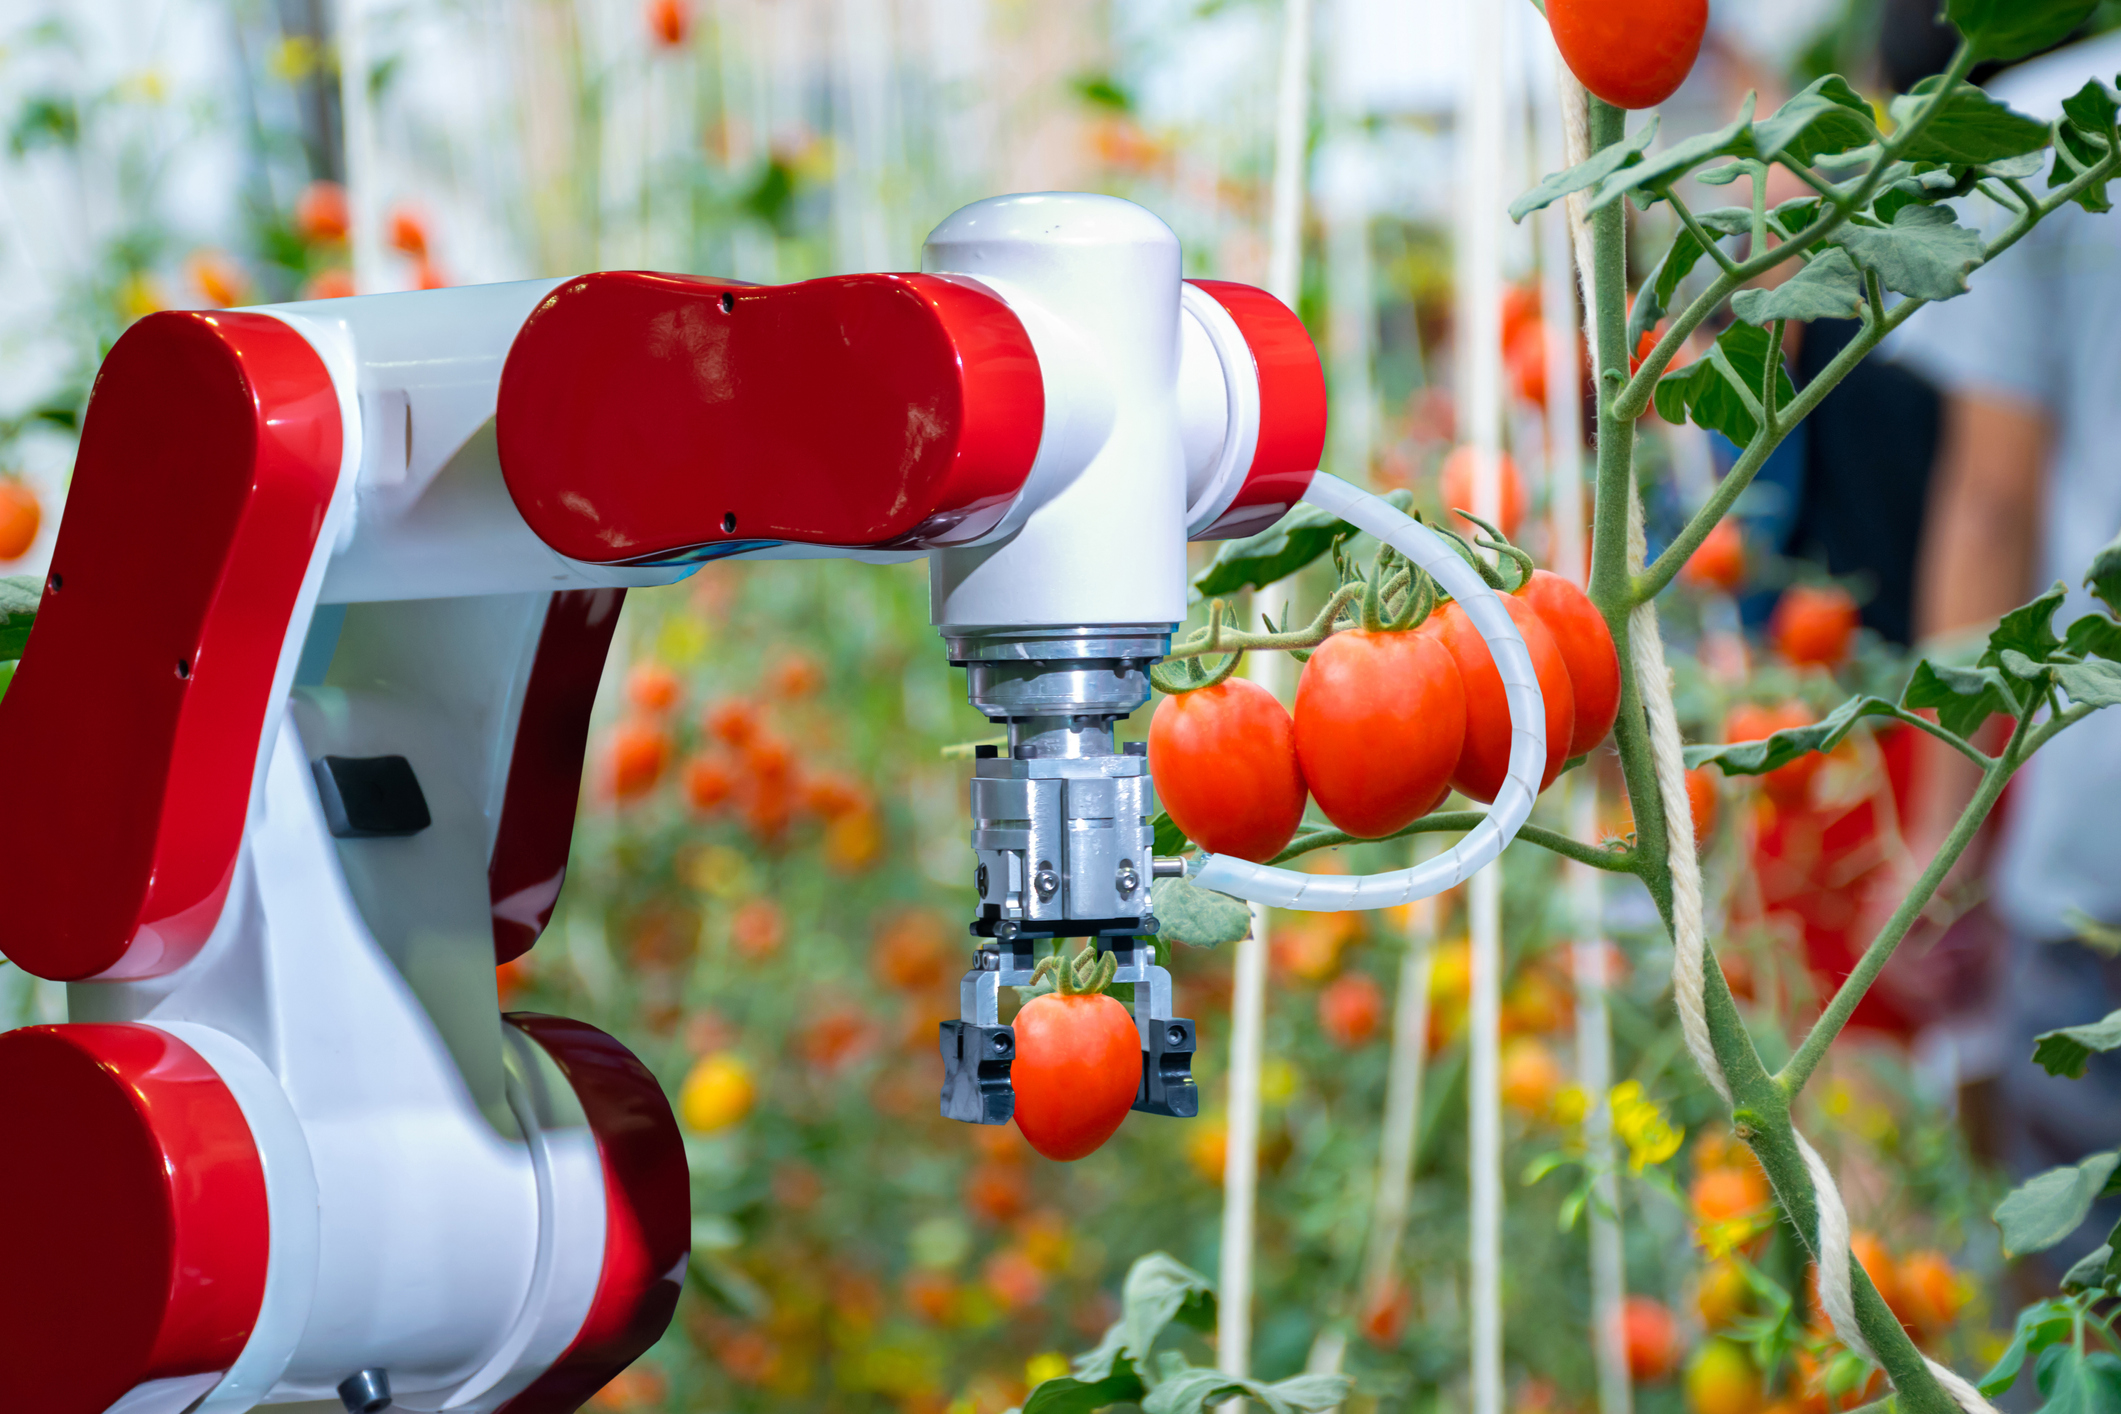 Tomato Fruit Picking Robot